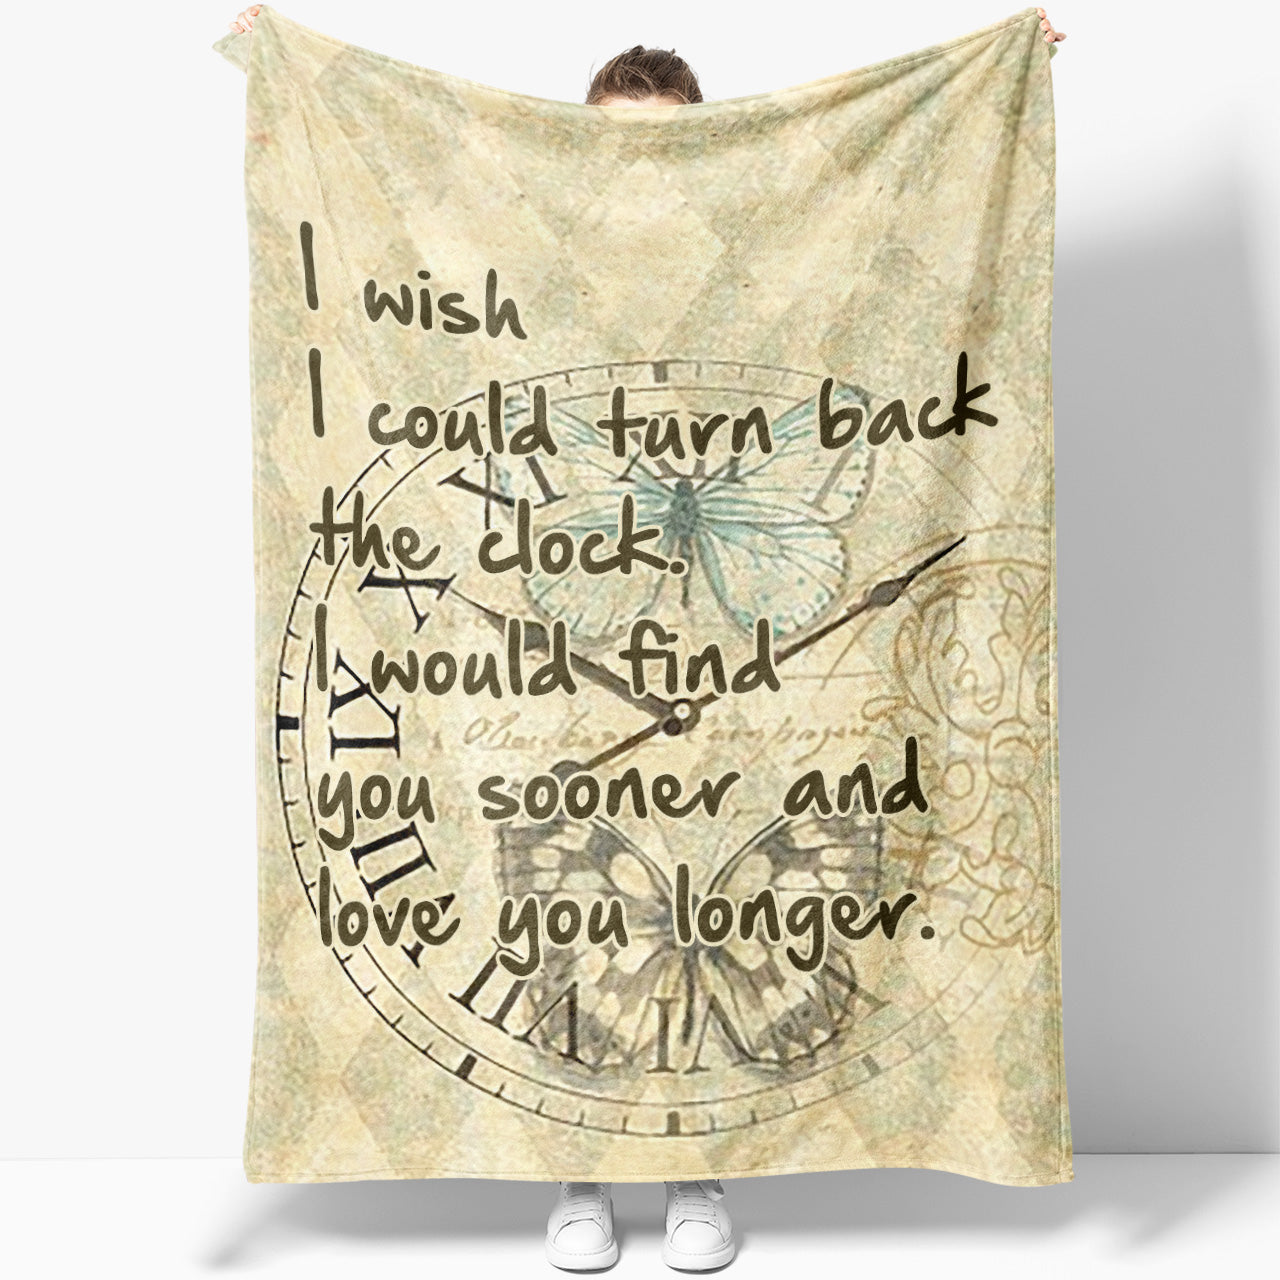 Blanket Gift For Her, Gift For Girlfriend, Gift Ideas For Women, Turn Back The Clock